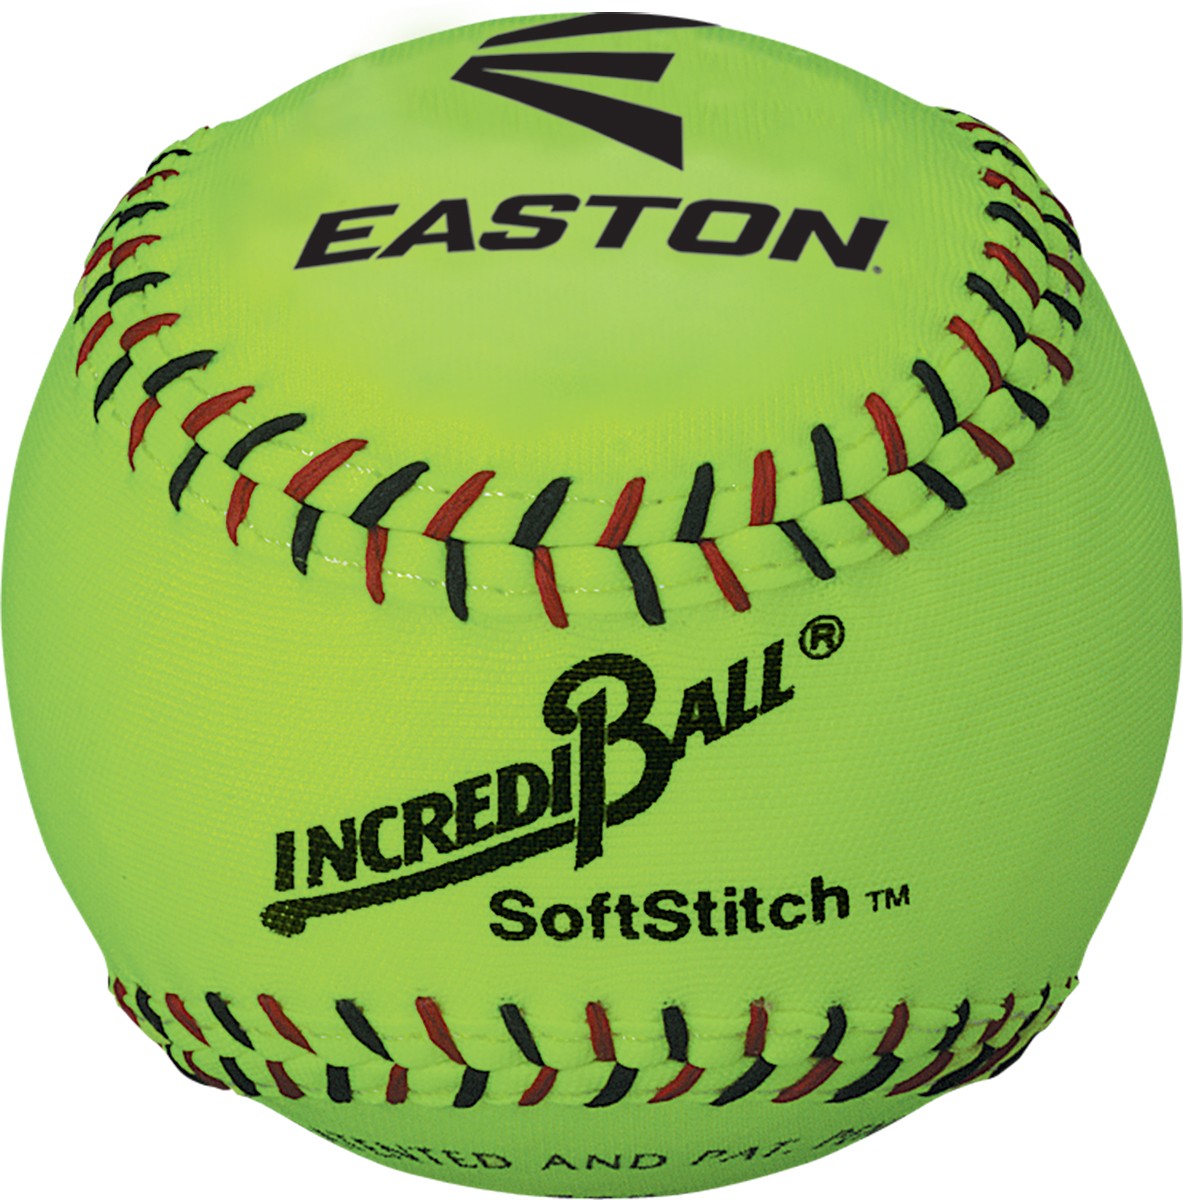 Easton Incrediball Softstitch Softball - 11